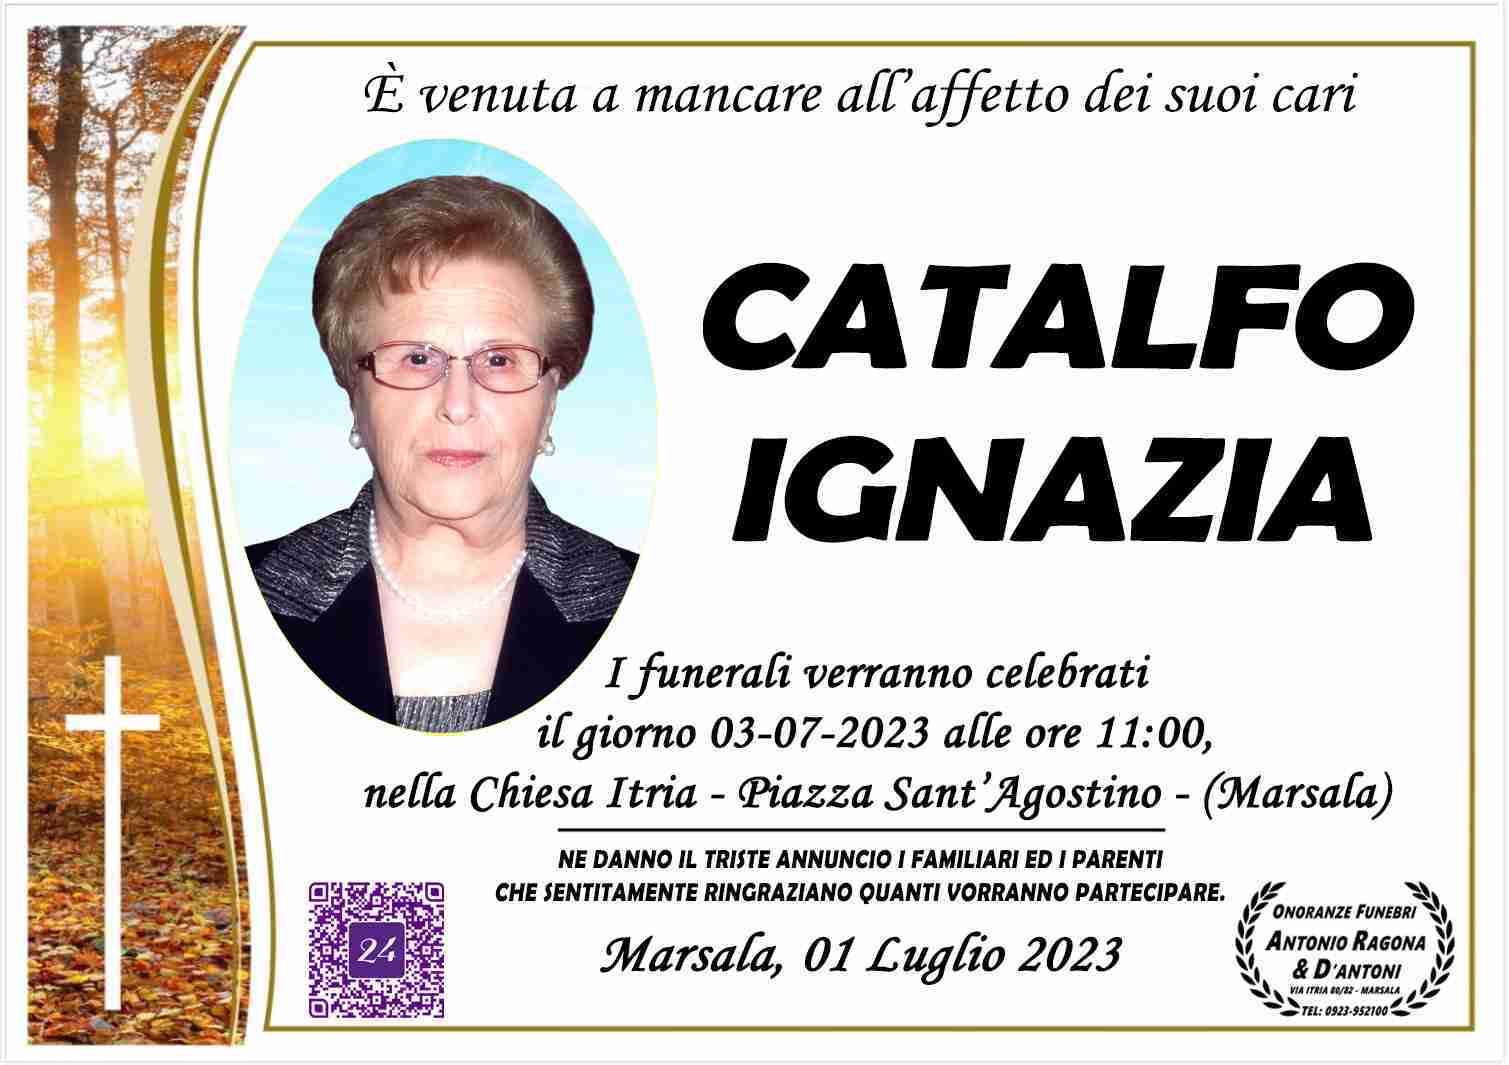 Ignazia Catalfo